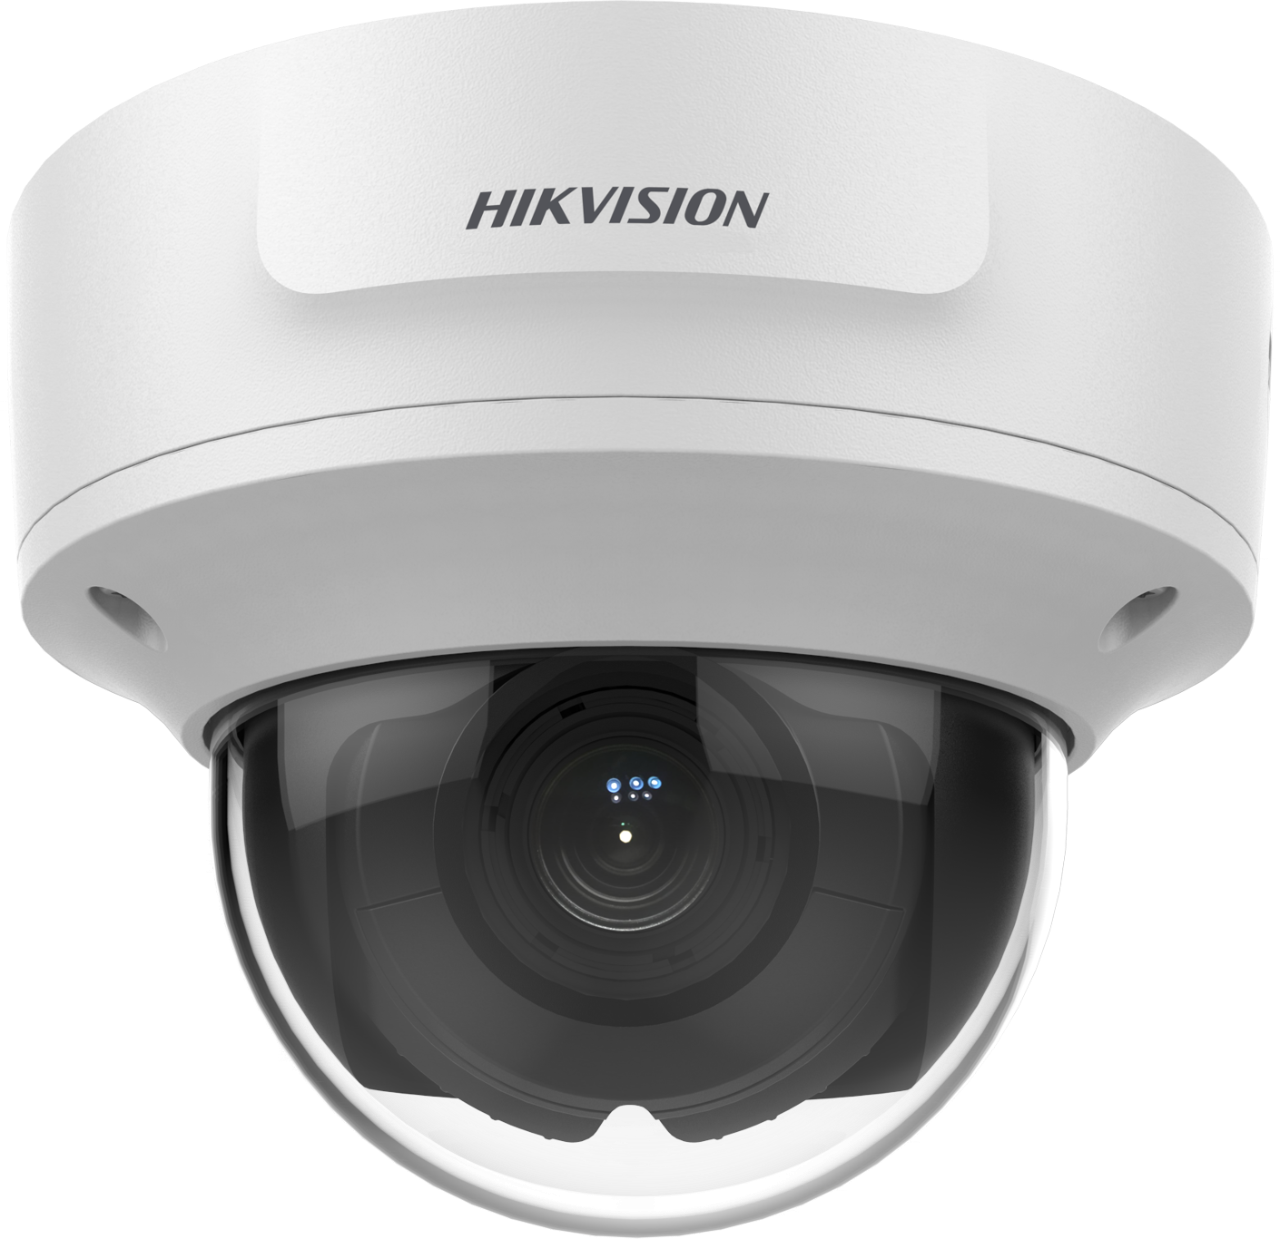 กล้องโทรทัศน์วงจรปิดชนิดเครือข่าย แบบมุมมองคงที่สำหรับติดตั้งภายในอาคาร DS-2CD3721G0-IZ Hikvision